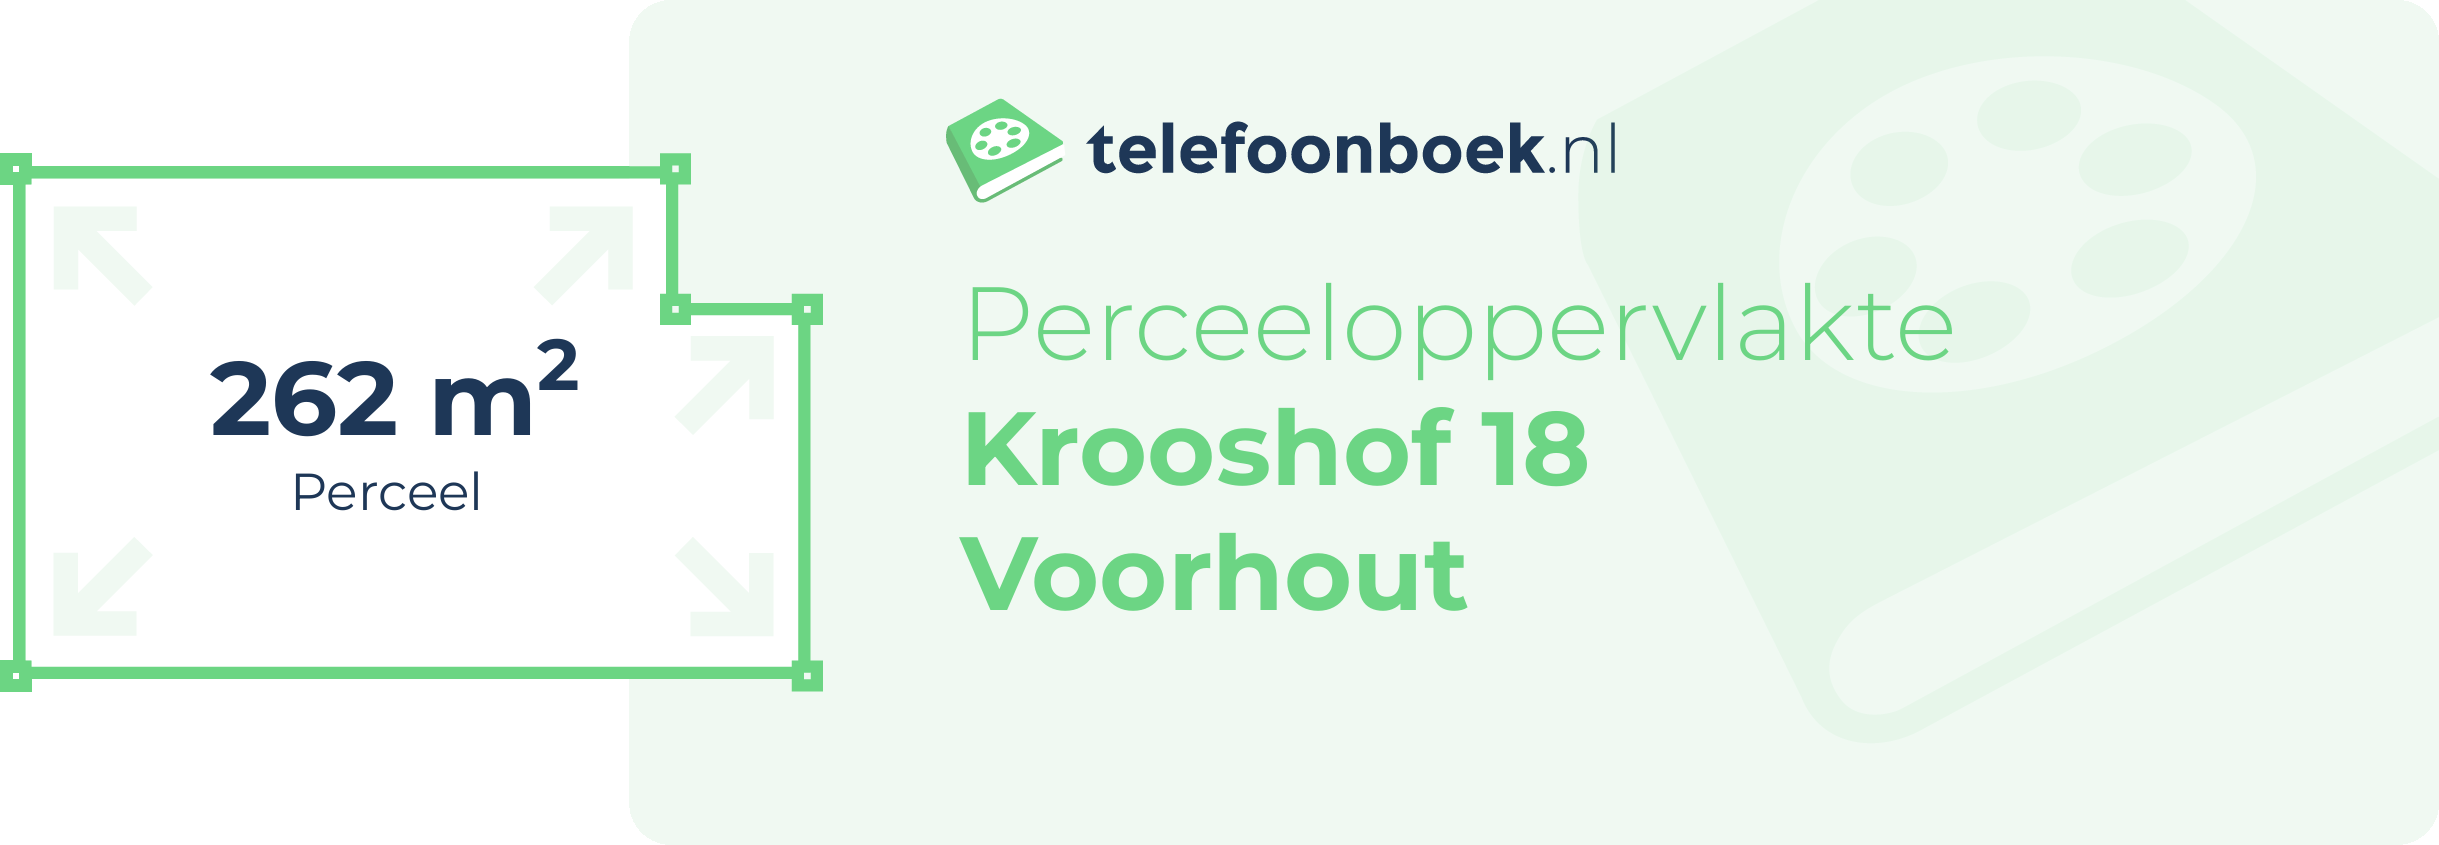 Perceeloppervlakte Krooshof 18 Voorhout